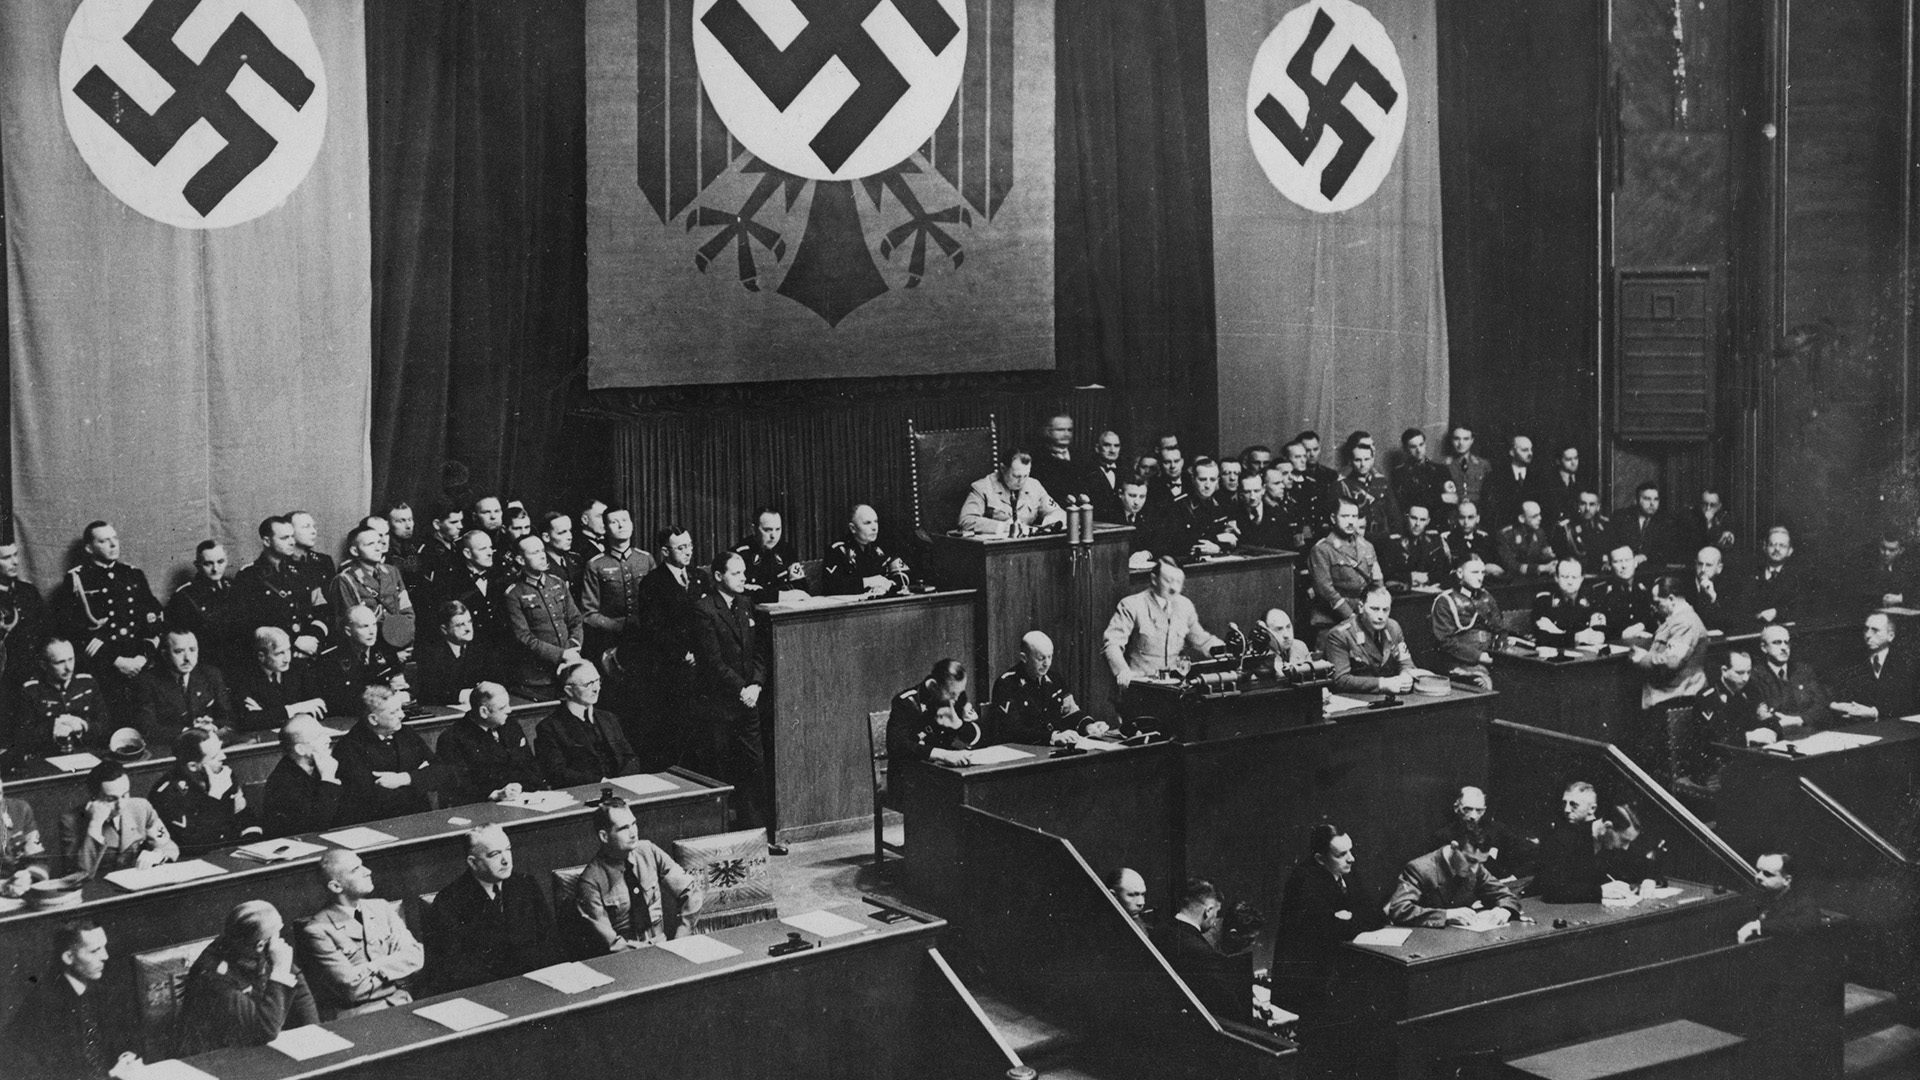 El canciller alemán Adolf Hitler habla en el Reichstag en Berlín, Alemania, antes de la entrada de las tropas alemanas en Renania, el 7 de marzo de 1936. También aparecen en la imagen Rudolf Hess y Joseph Goebbels (Keystone/Hulton Archive/Getty Images)